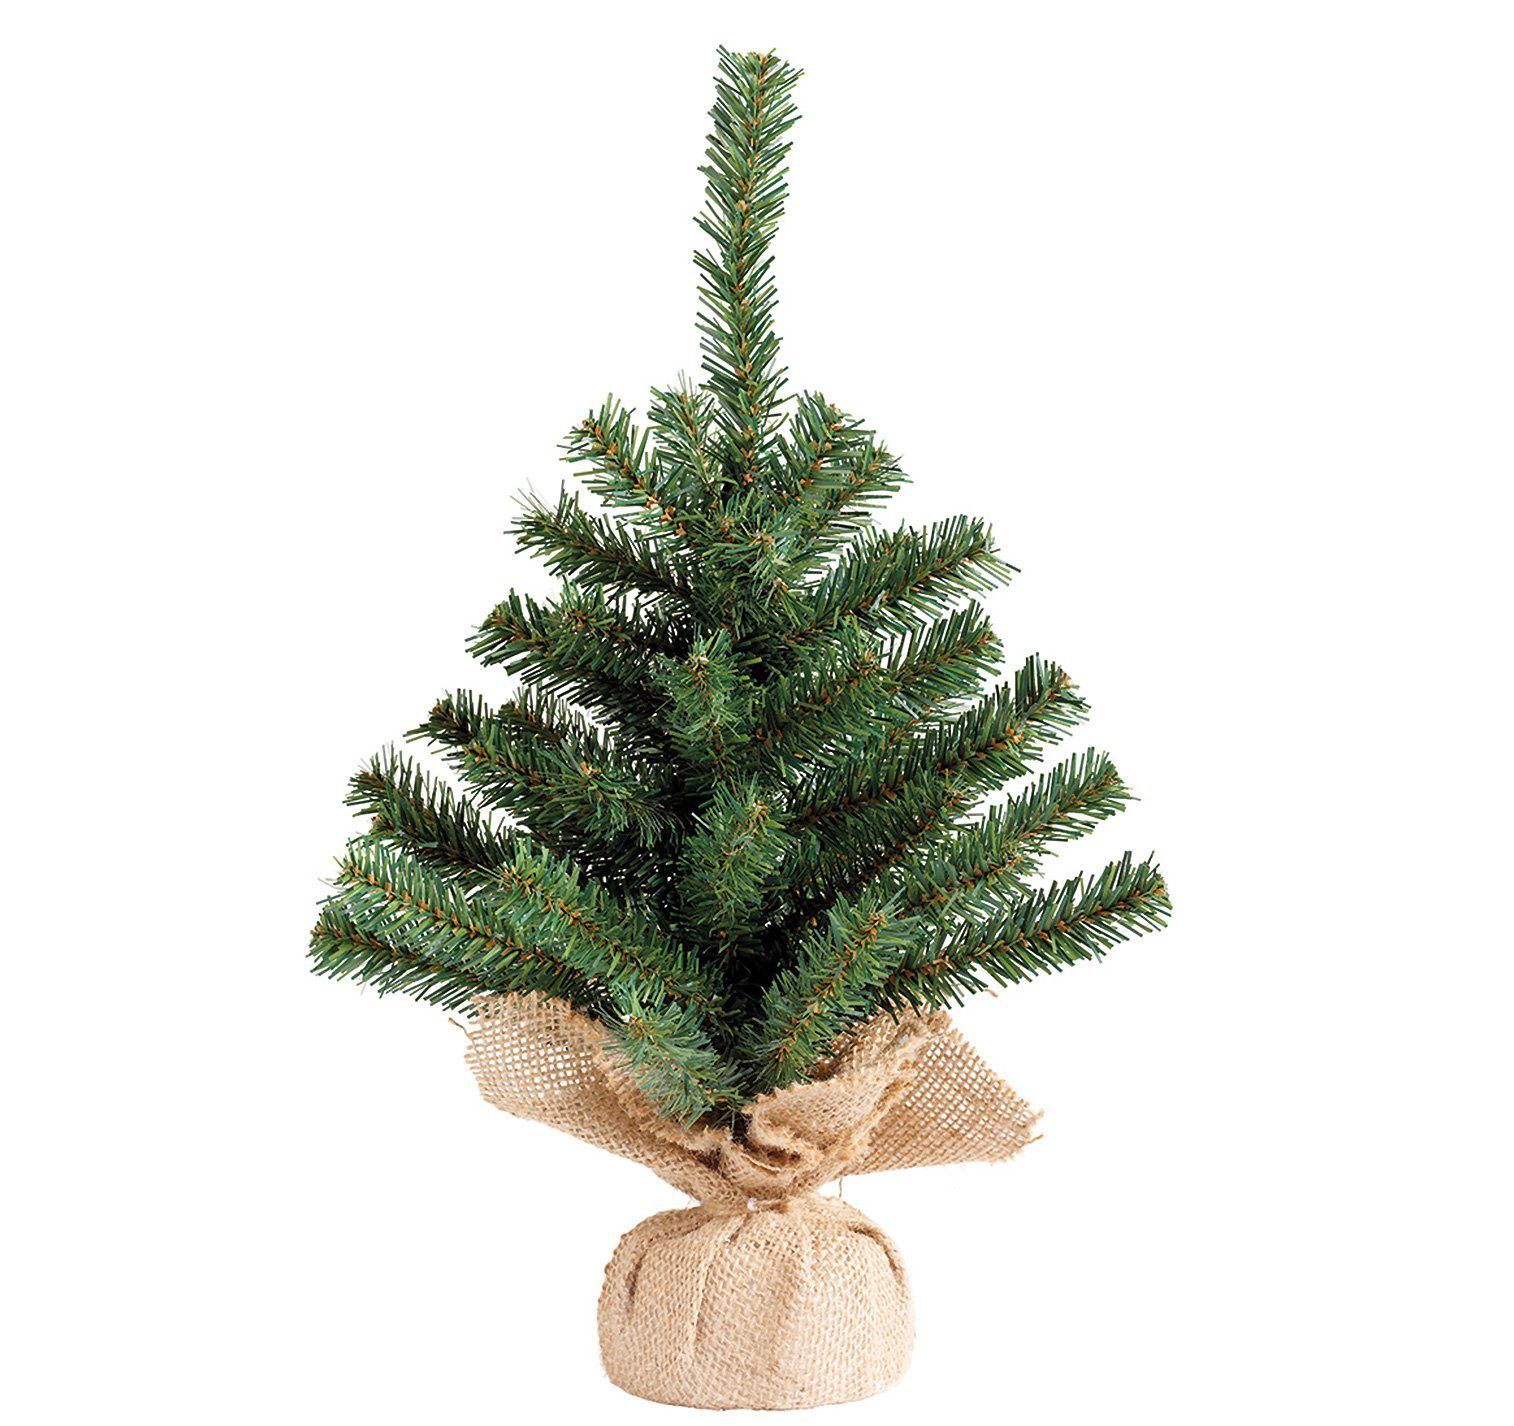 Decoris season decorations Künstlicher Weihnachtsbaum, Tannenbaum künstlich im Jutesack 45cm grün